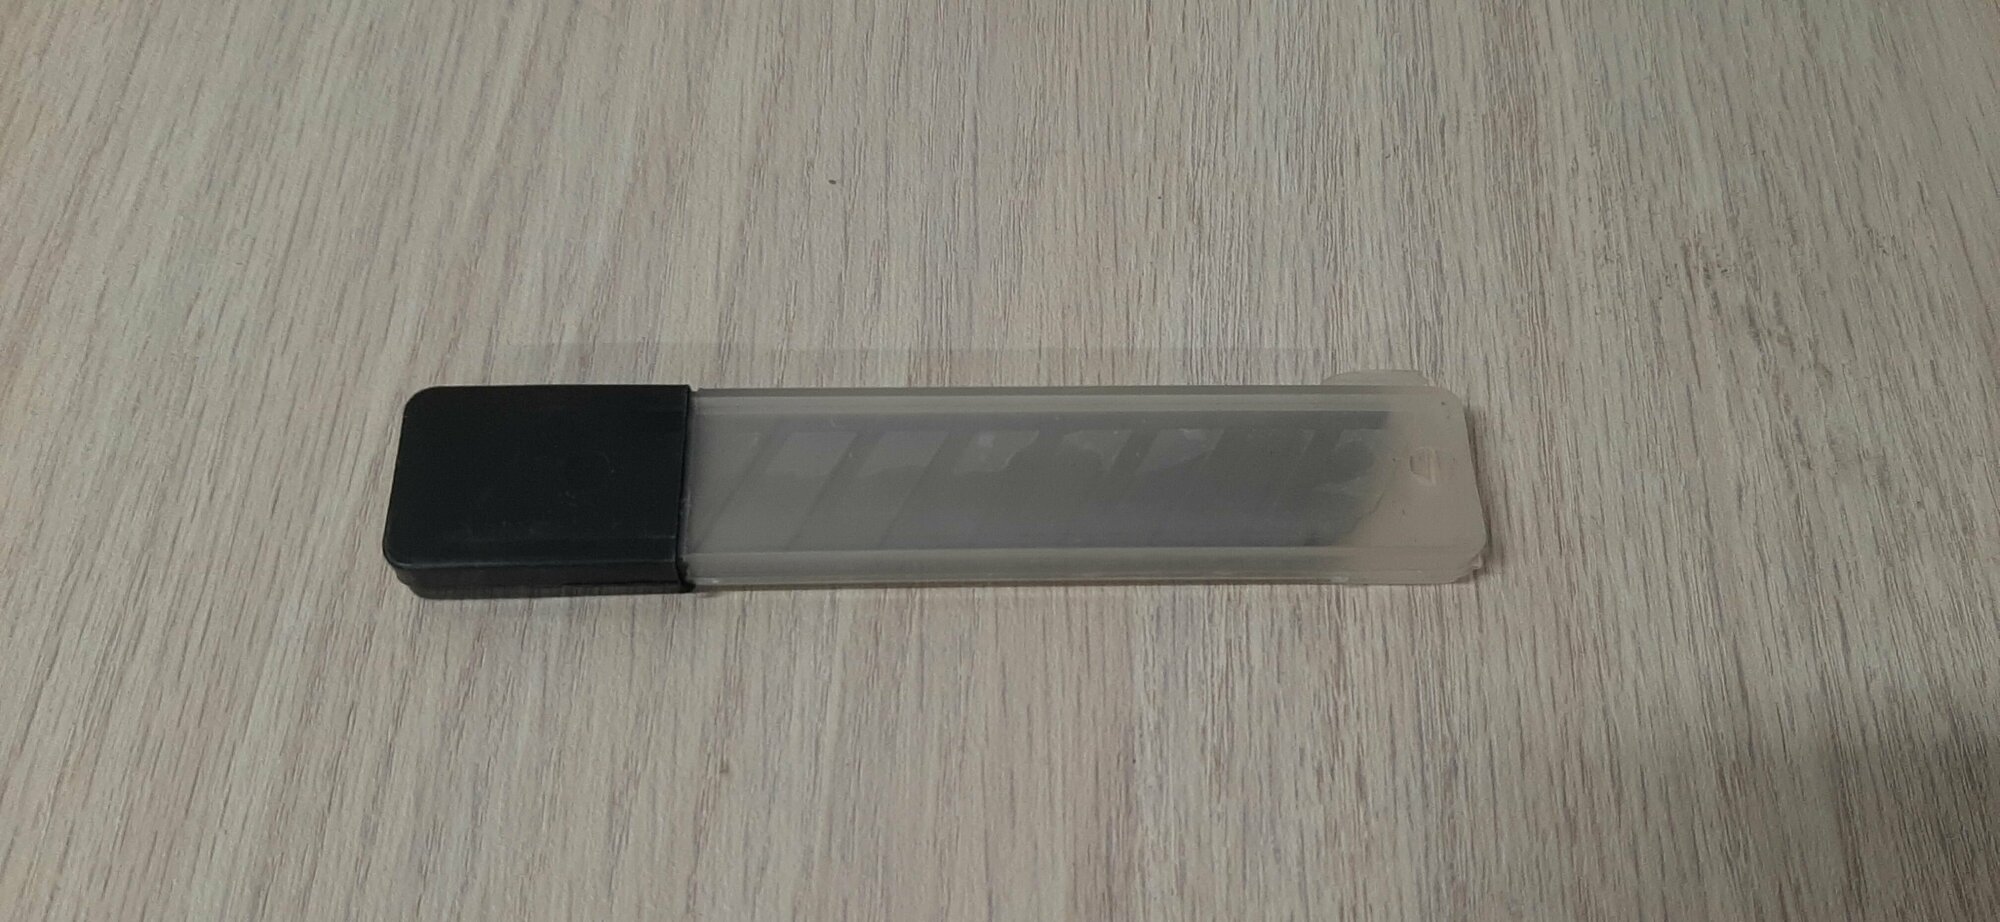 Запасные лезвия для ножей СВ18 10 шт/уп